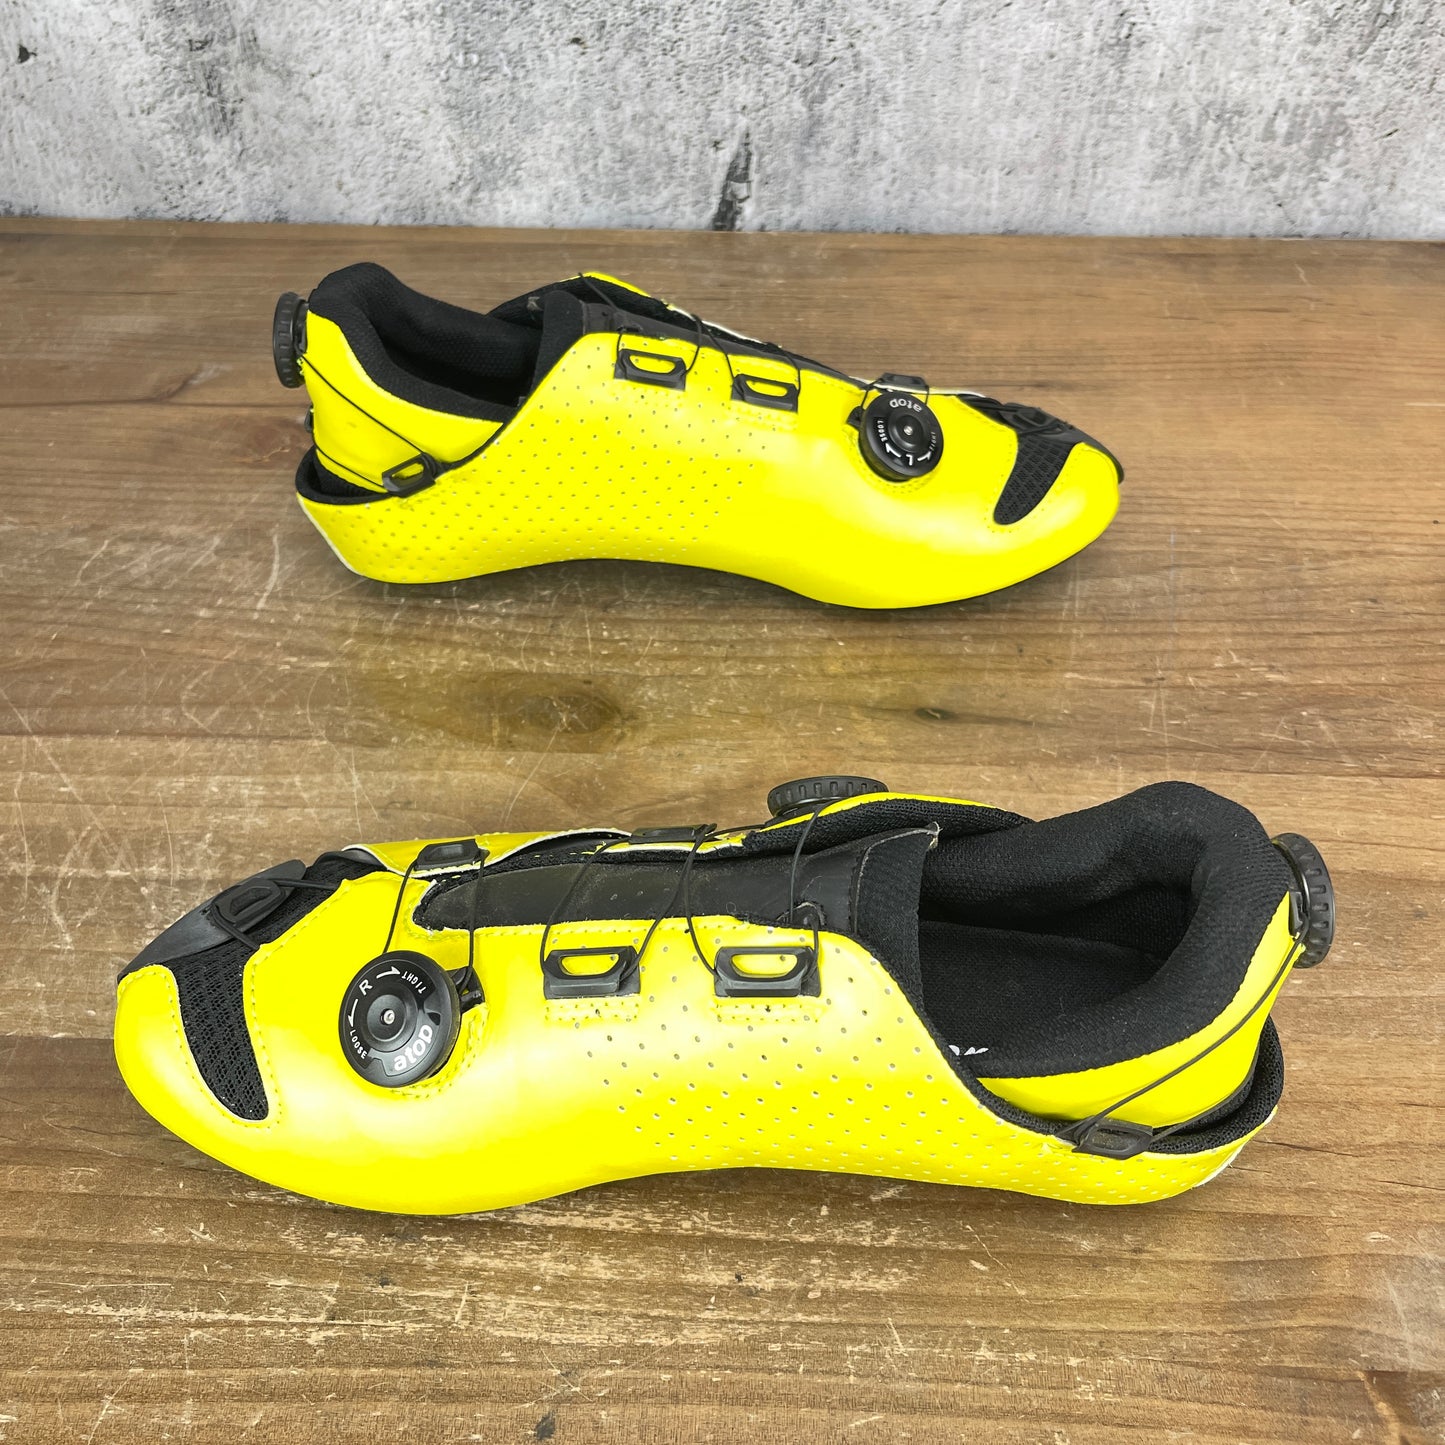 New! Lintaman Adjust Pro Carbon Men's 9 US 43 EU Road Bike Cycling Shoes 3-Bolt